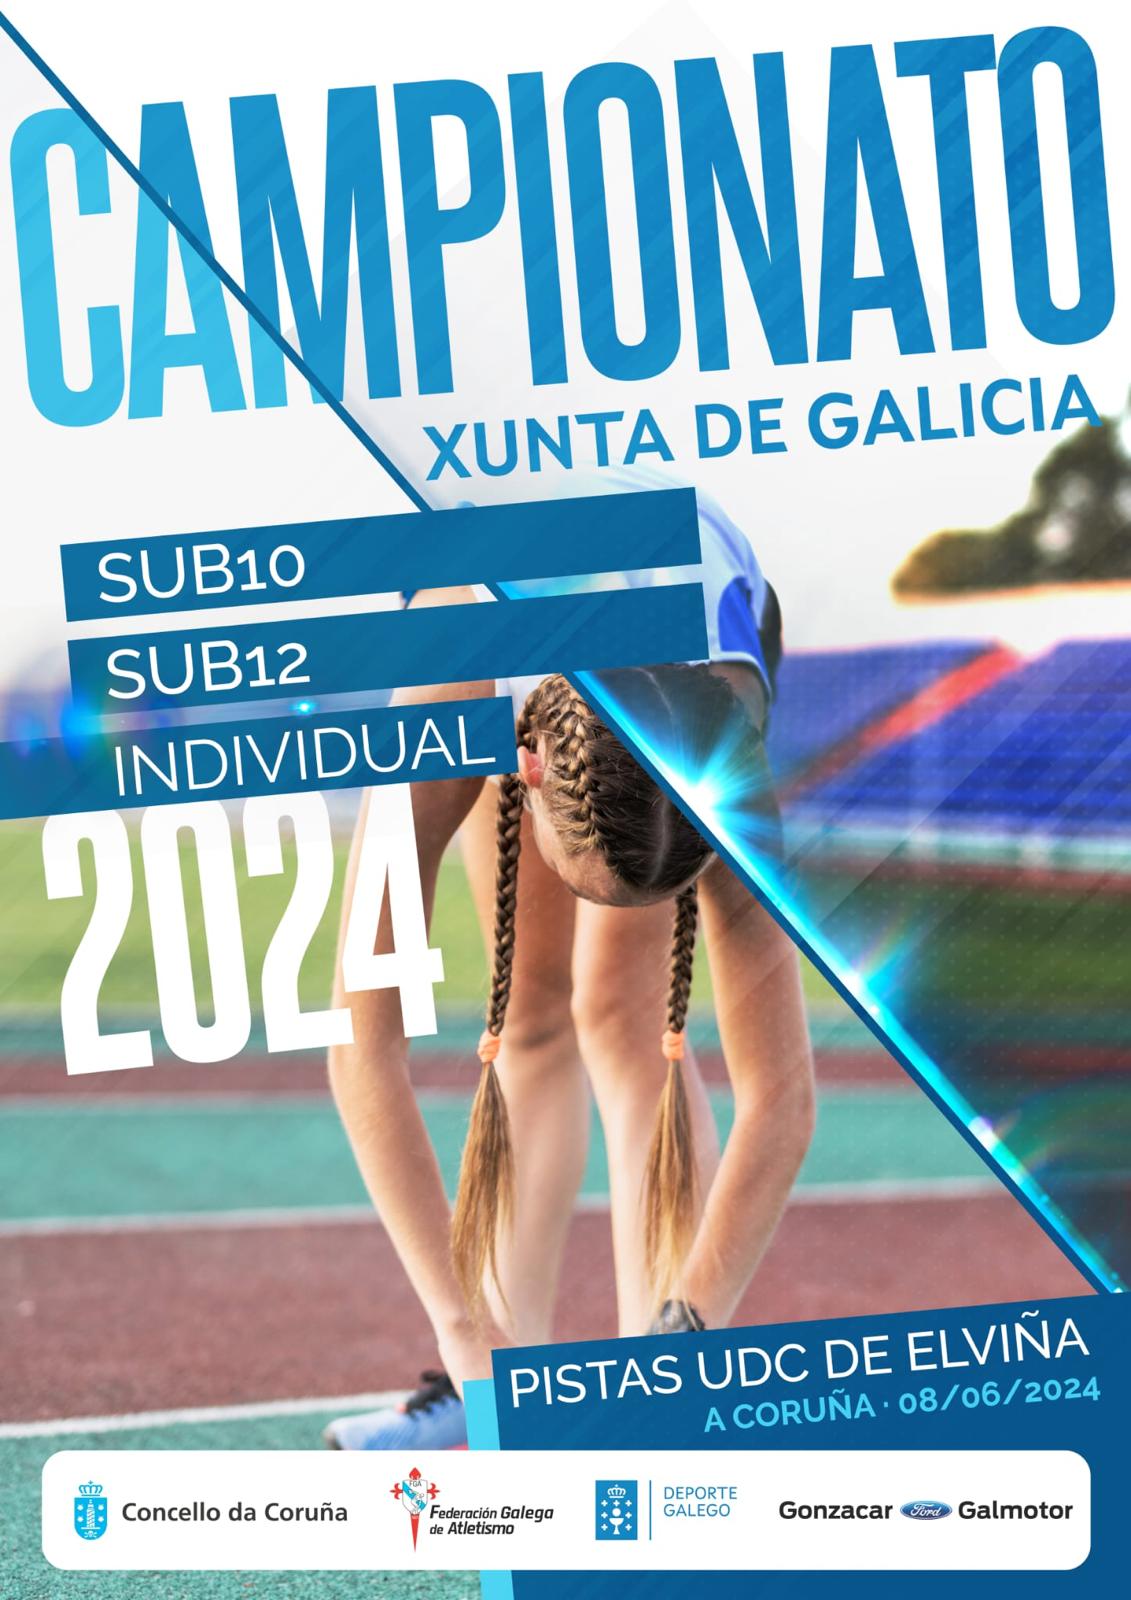 Campionato Xunta de Galicia Sub 10 e Sub 12 – 2024